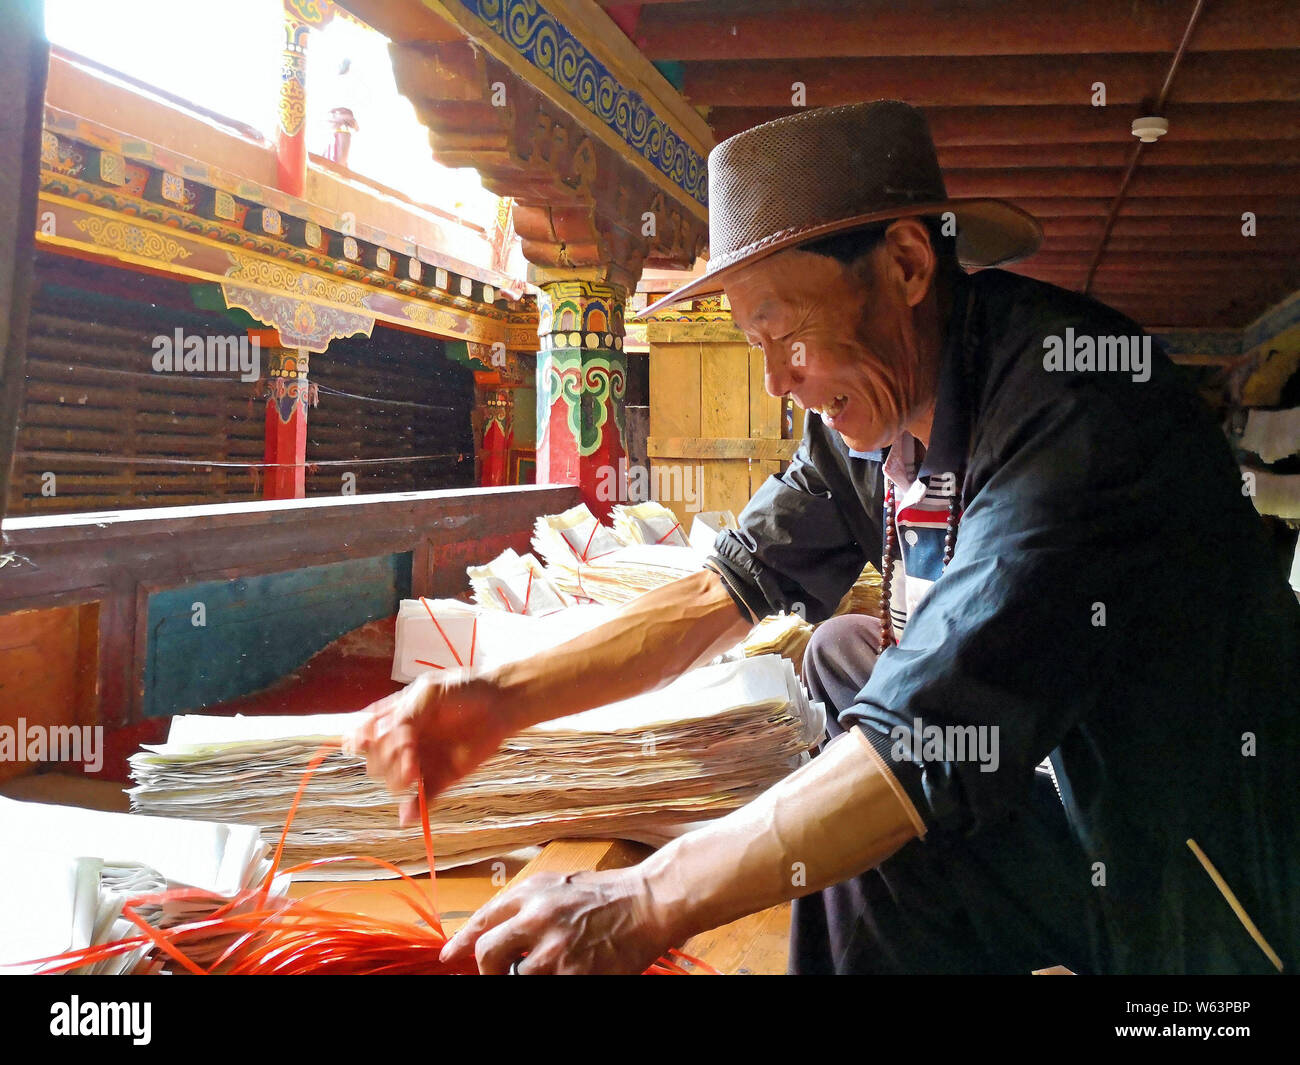 Un travailleur est le tri des pages imprimées à la maison Sutra-Printing Dege, ou Dege Parkhang les écritures anciennes maison d'impression à l'intérieur de l'Gengqing Monaster Banque D'Images